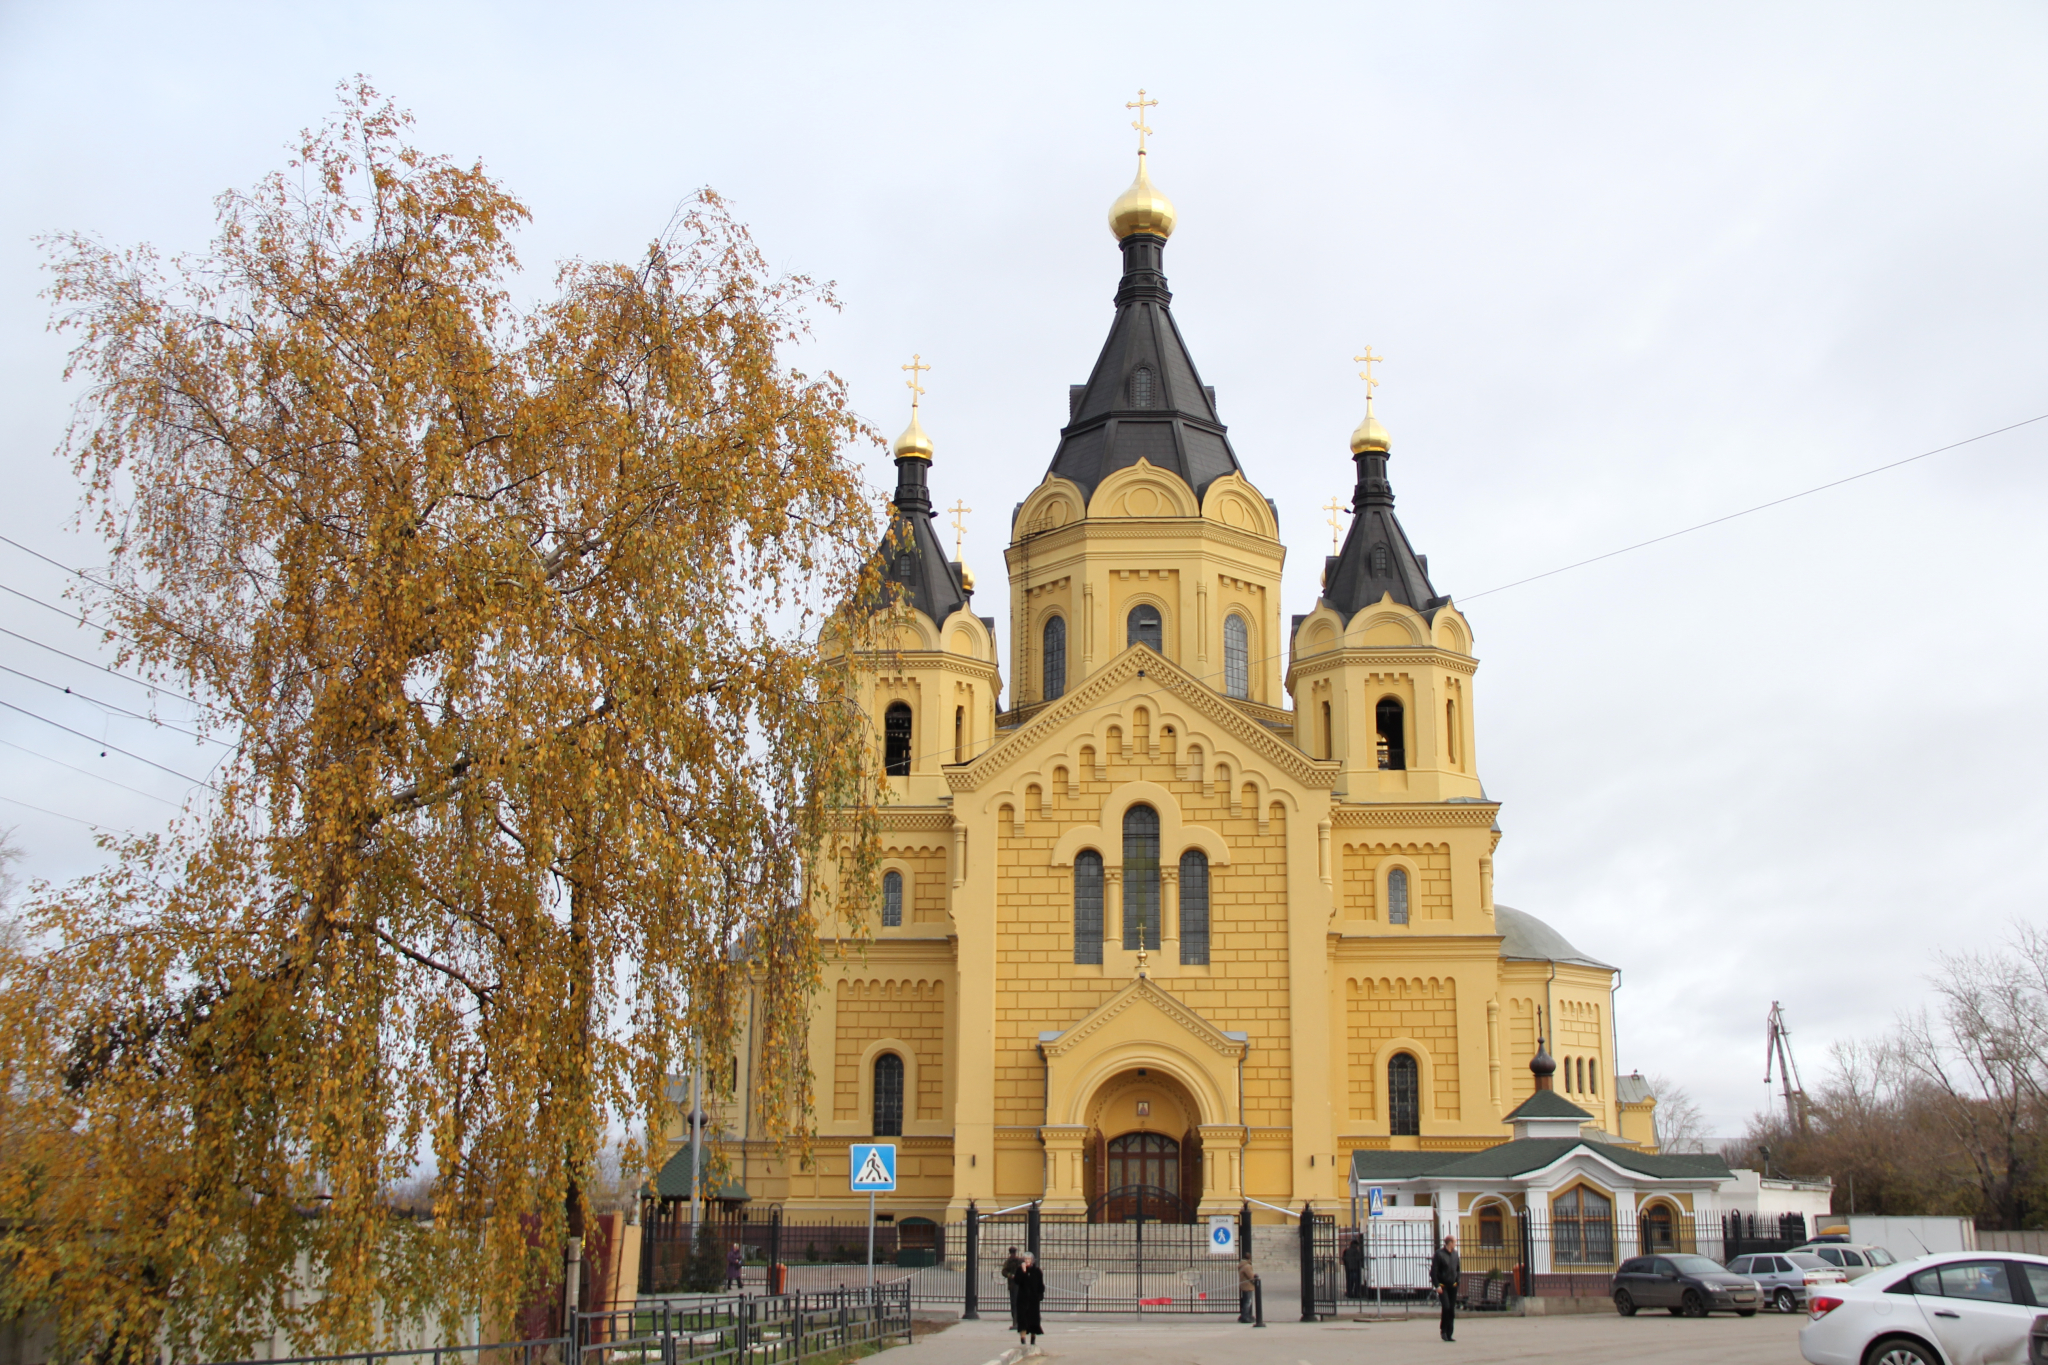 Божественная литургия в день празднования Пасхи пройдет в храмах Нижнего Новгорода